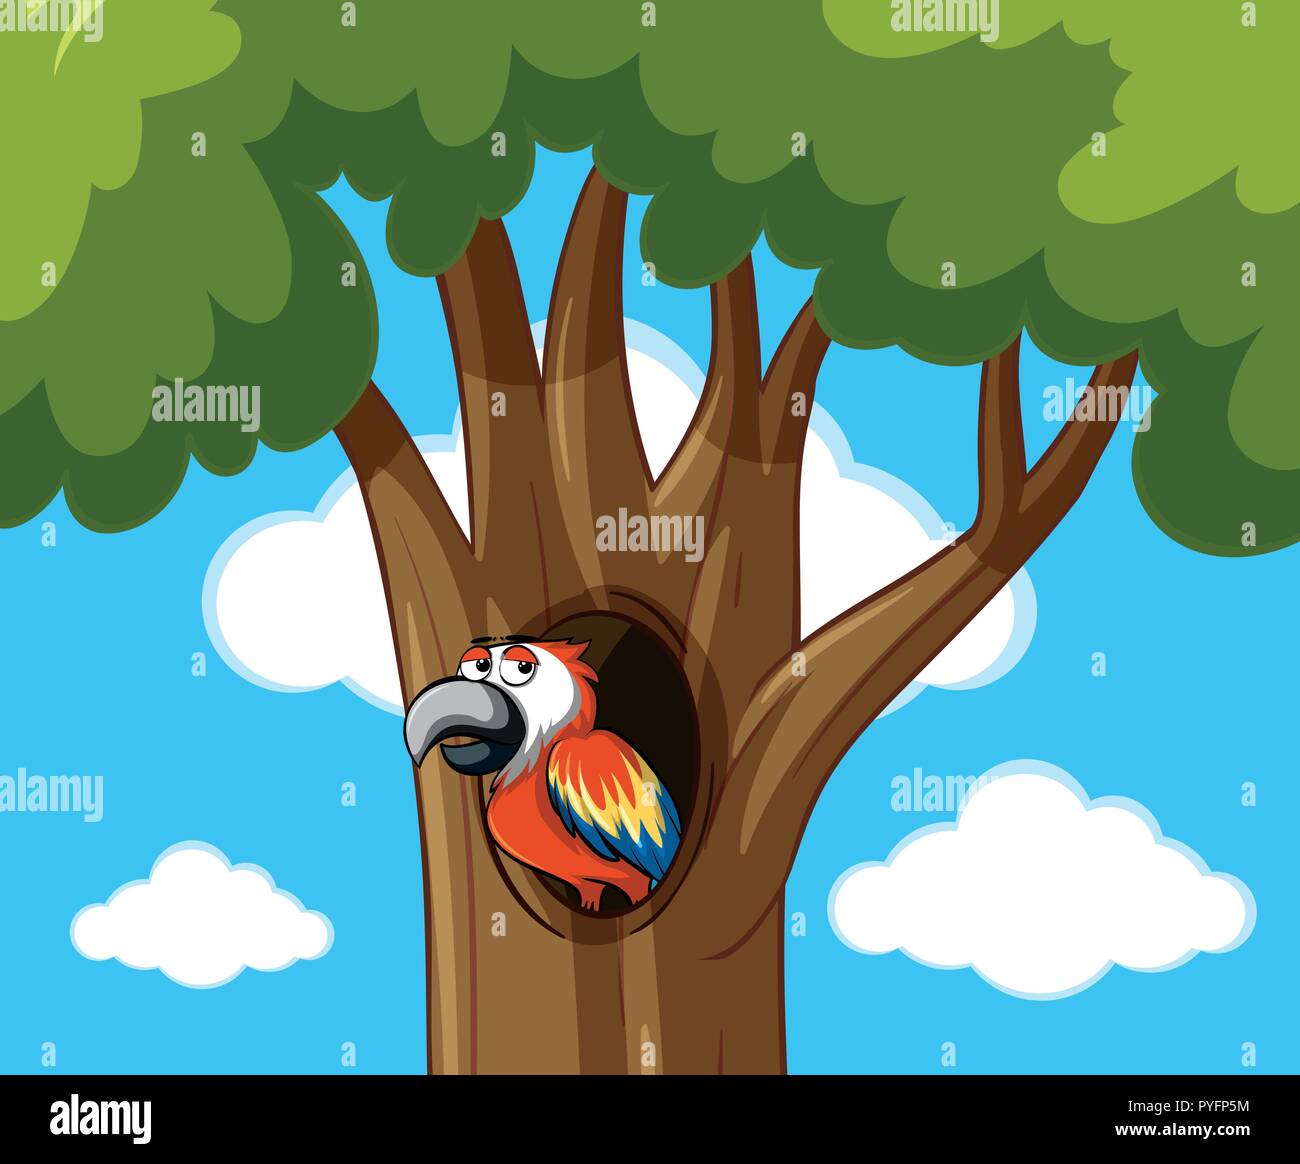 Parrot en ilustración de árbol hueco Ilustración del Vector